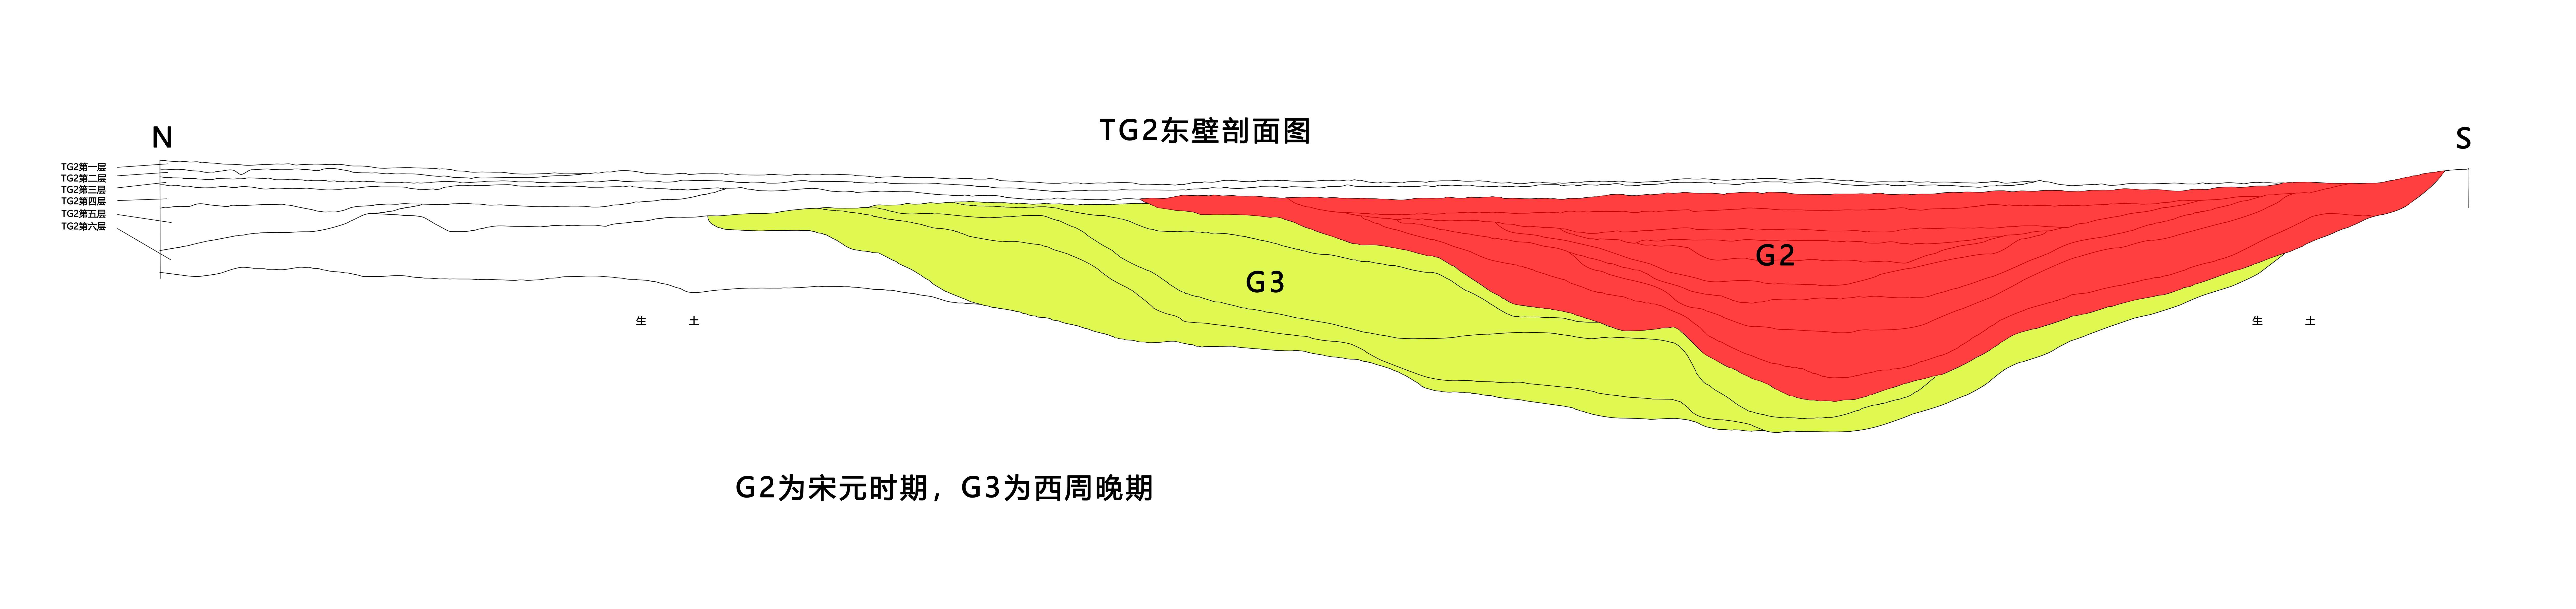 图10 TG2东壁剖面图（人工围濠）.jpg